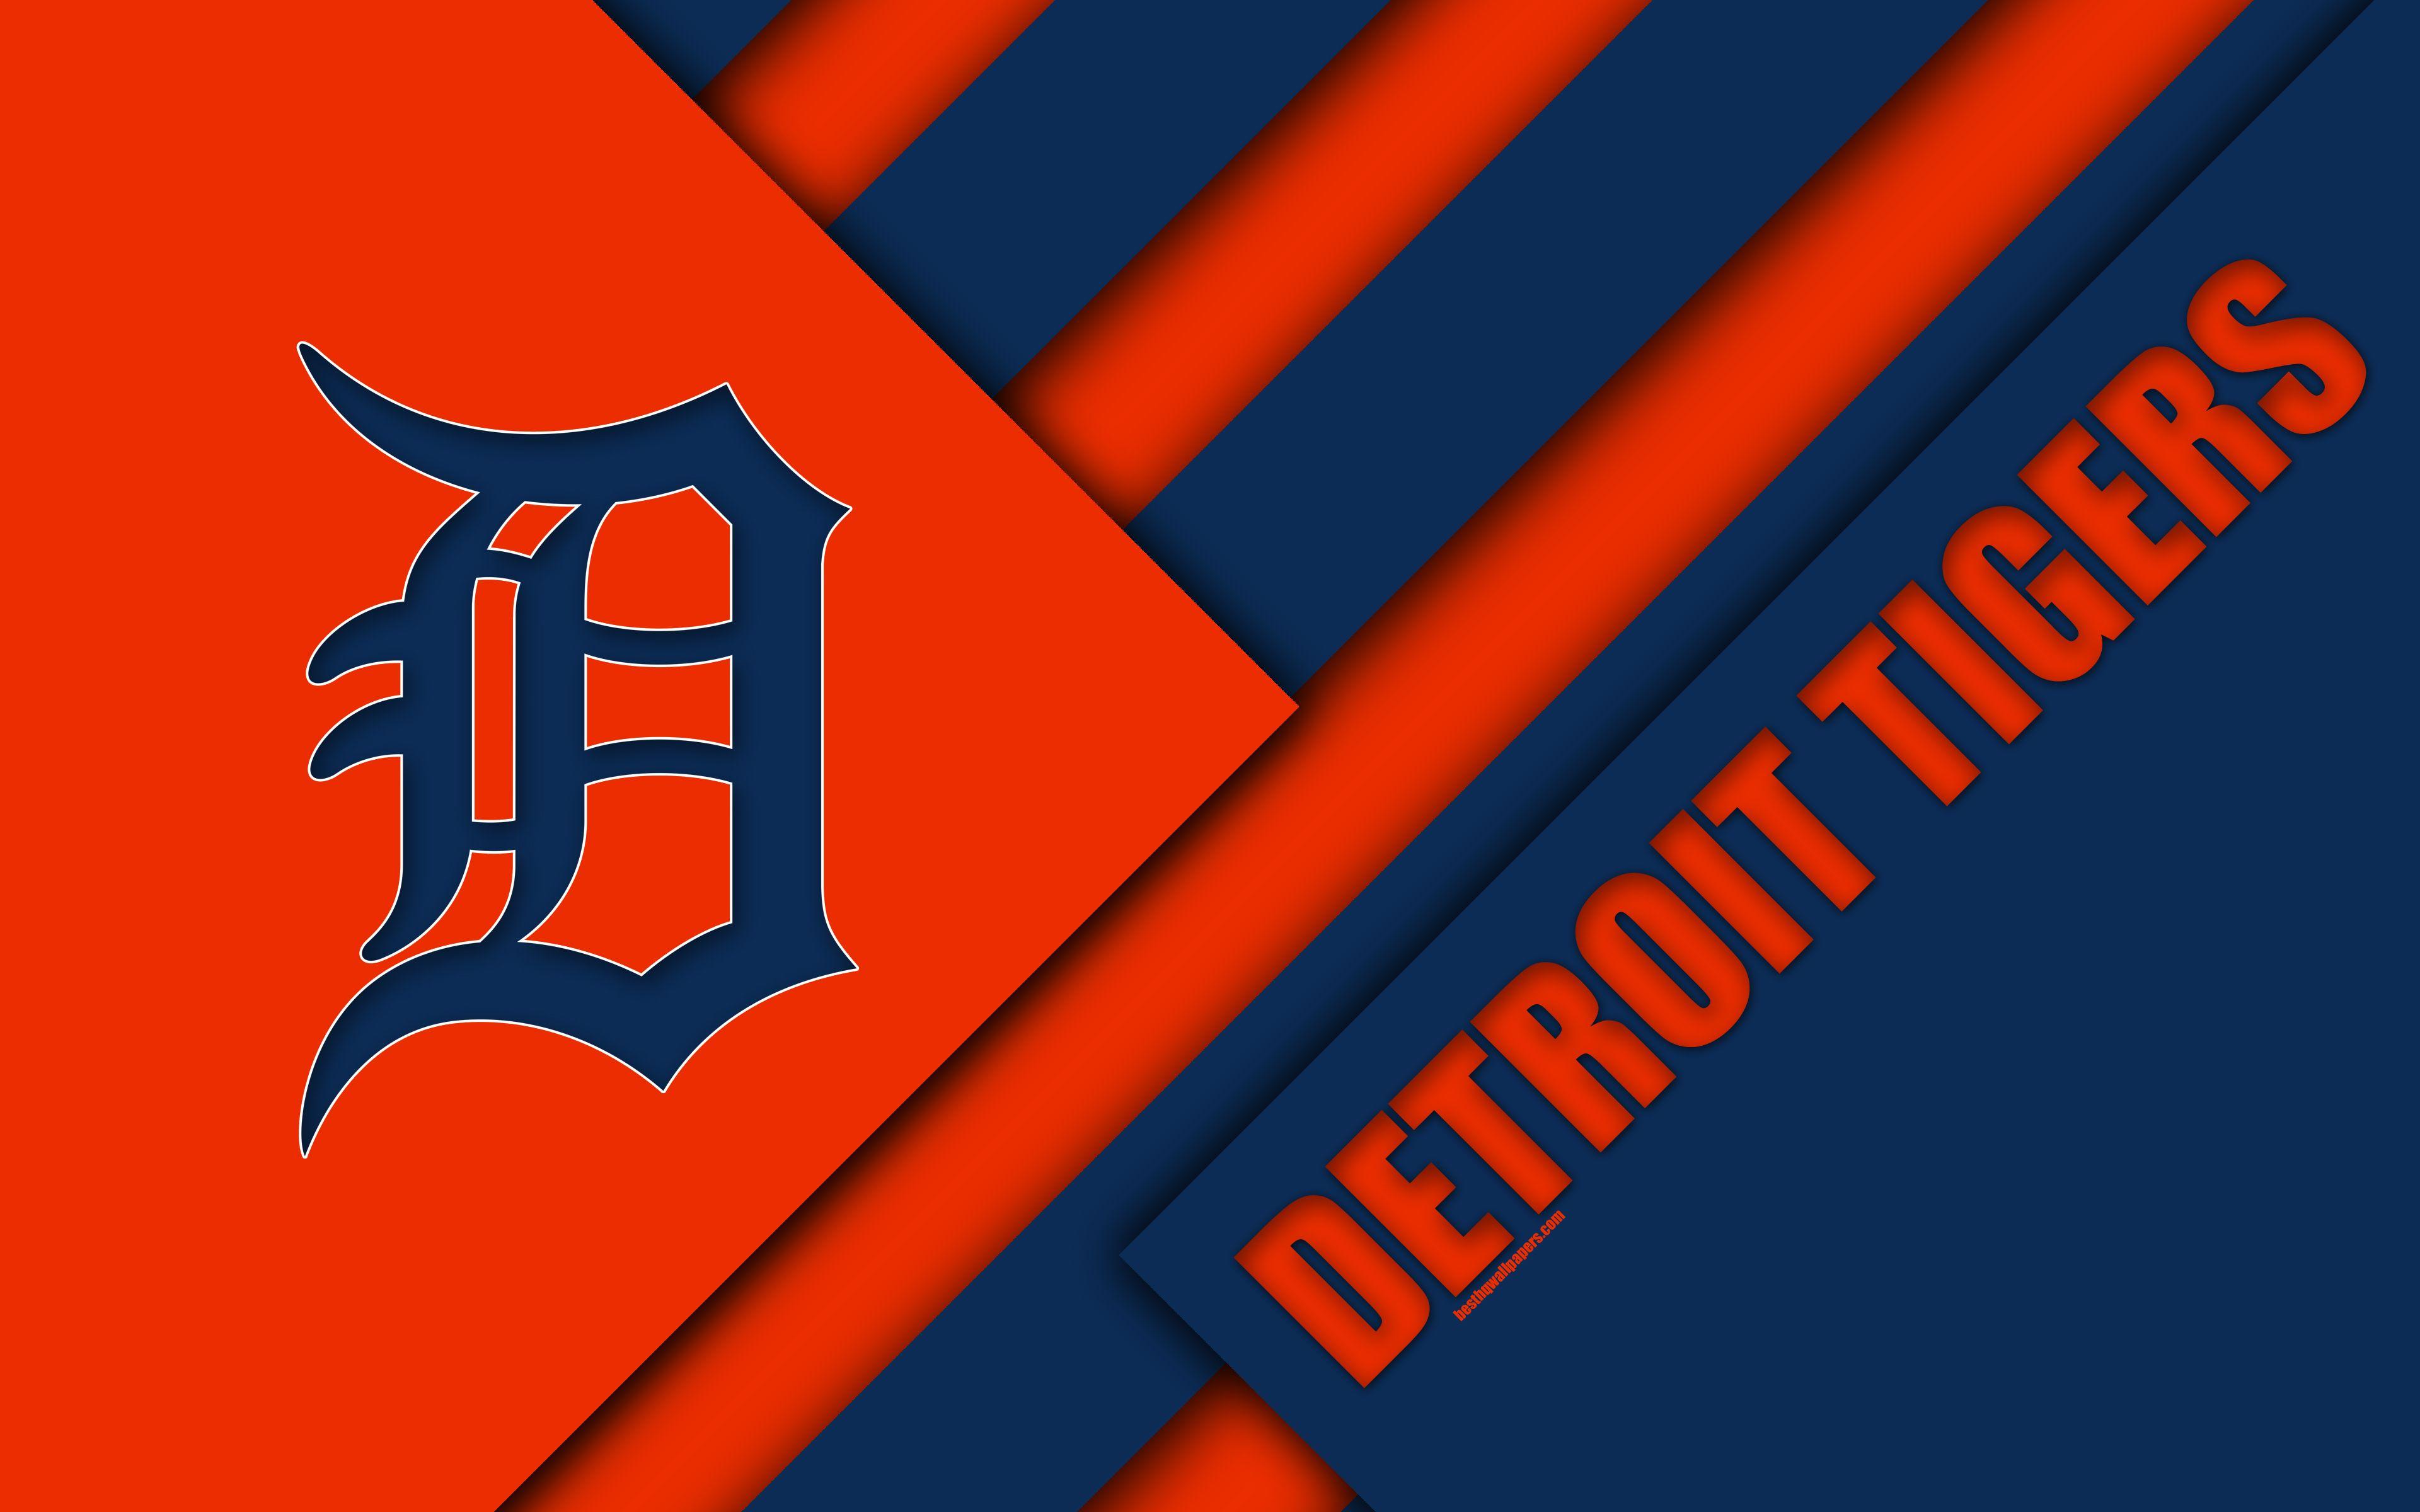 3840x2400 Tải xuống hình nền Detroit Tigers, MLB, 4K, màu cam xanh